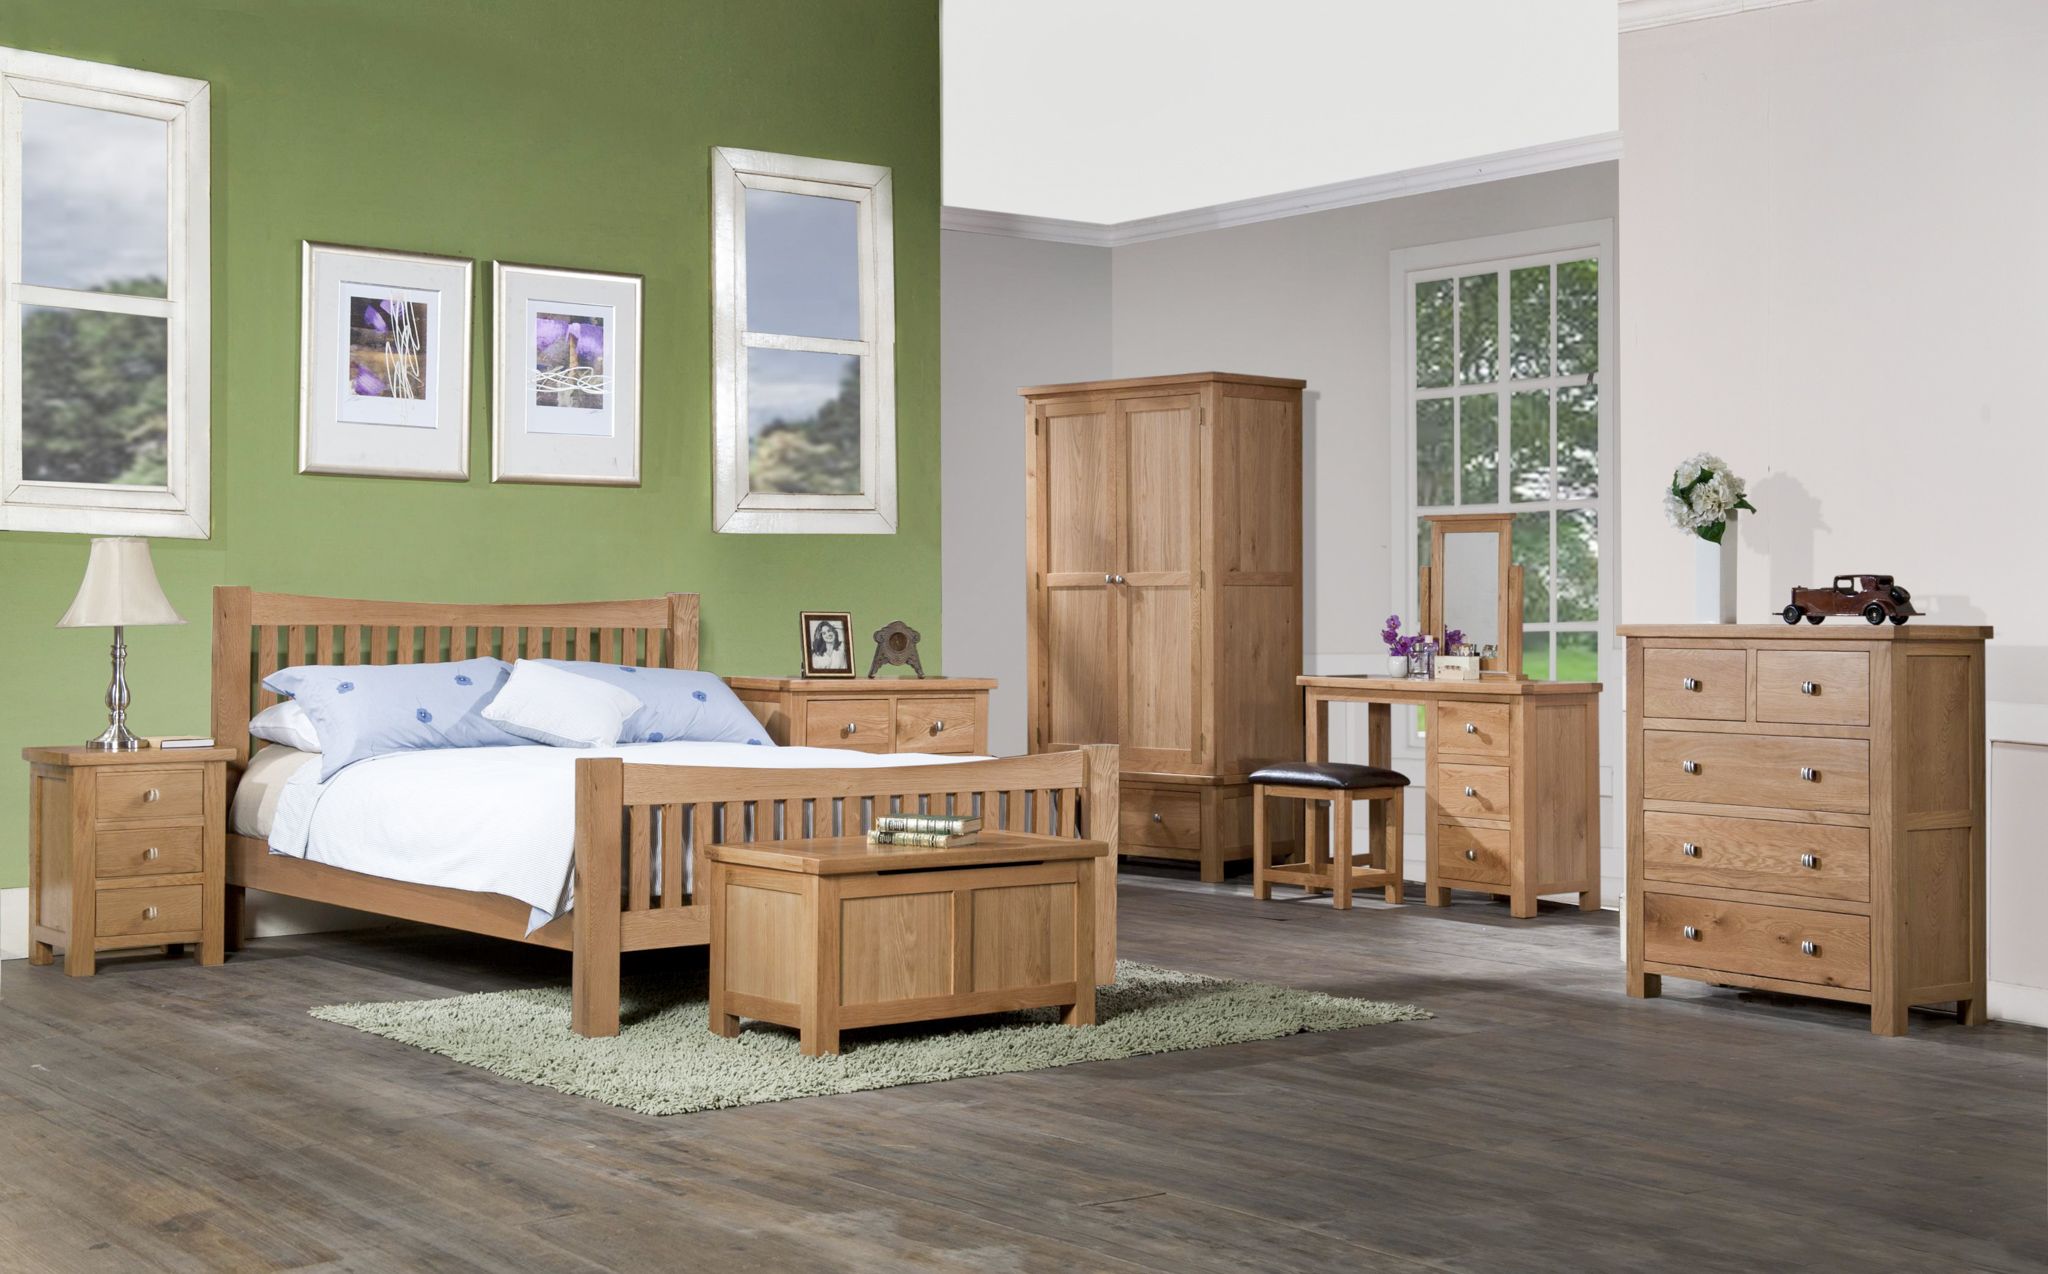 Đồ nội thất làm bằng gỗ tự nhiên mang đến cảm giác thư giãn, dễ chịu